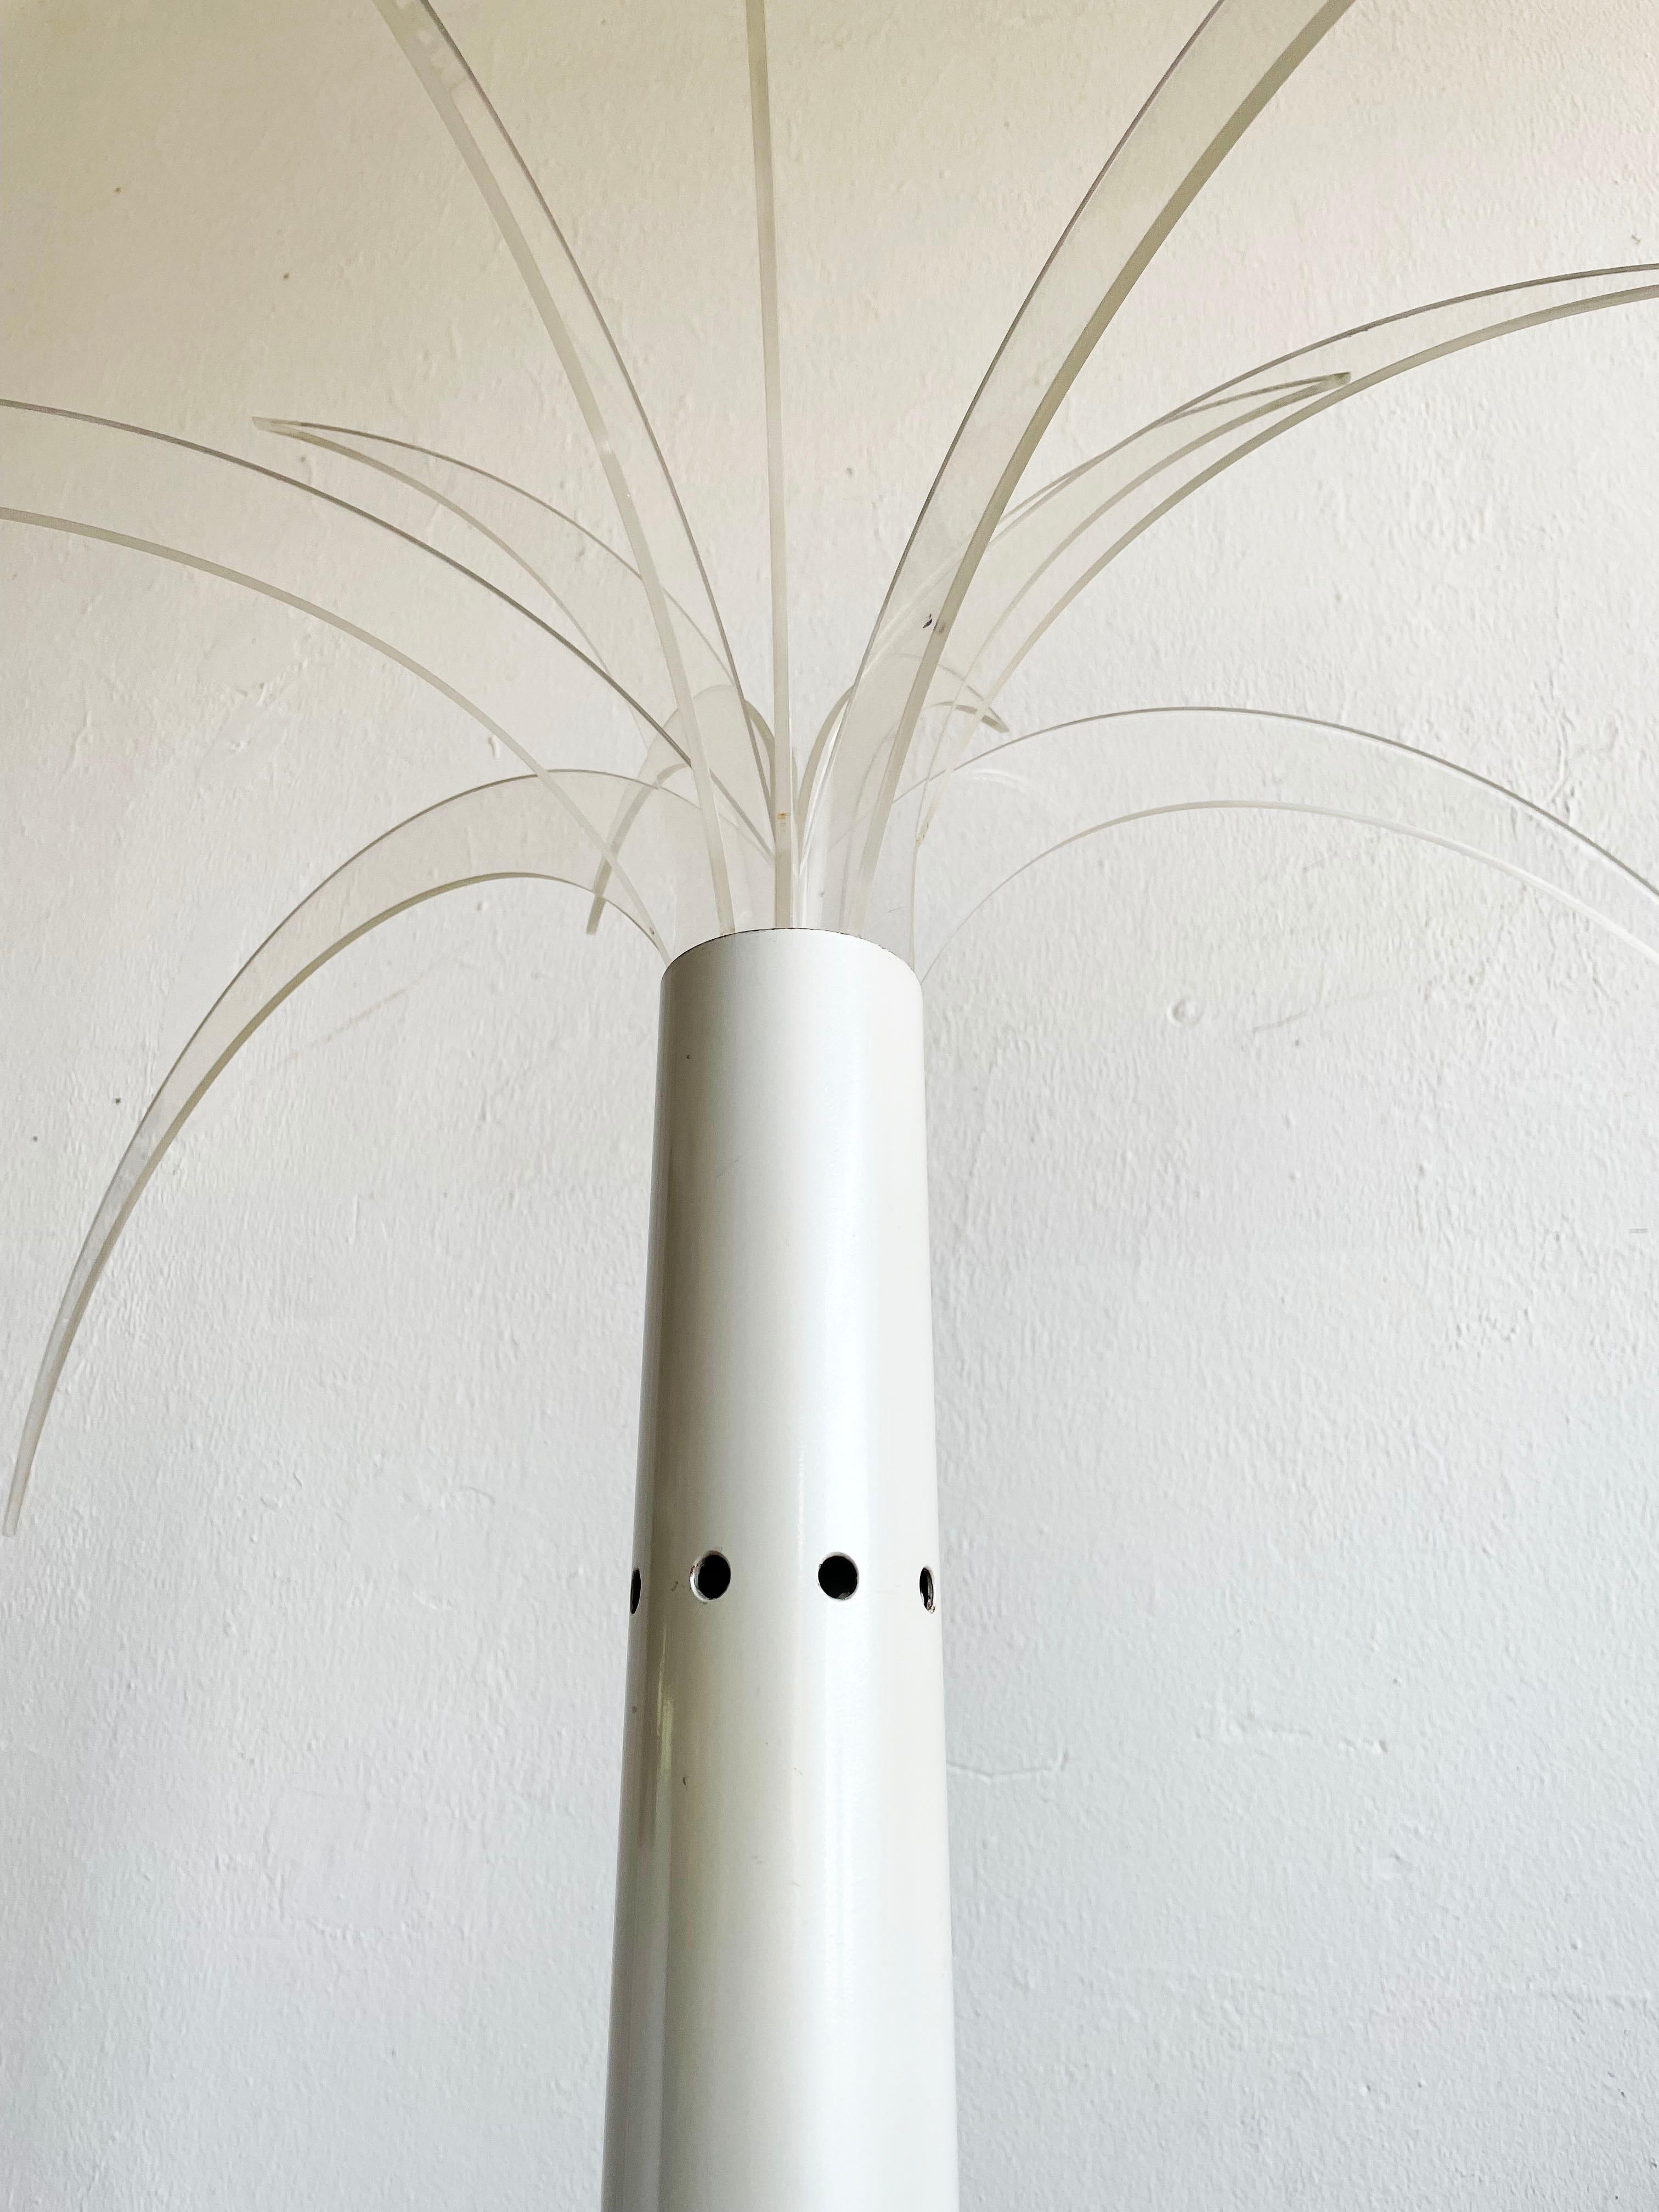 20th Century SANREMO Floor lamp designed by Archizoom Associati in 1968 for Poltronova